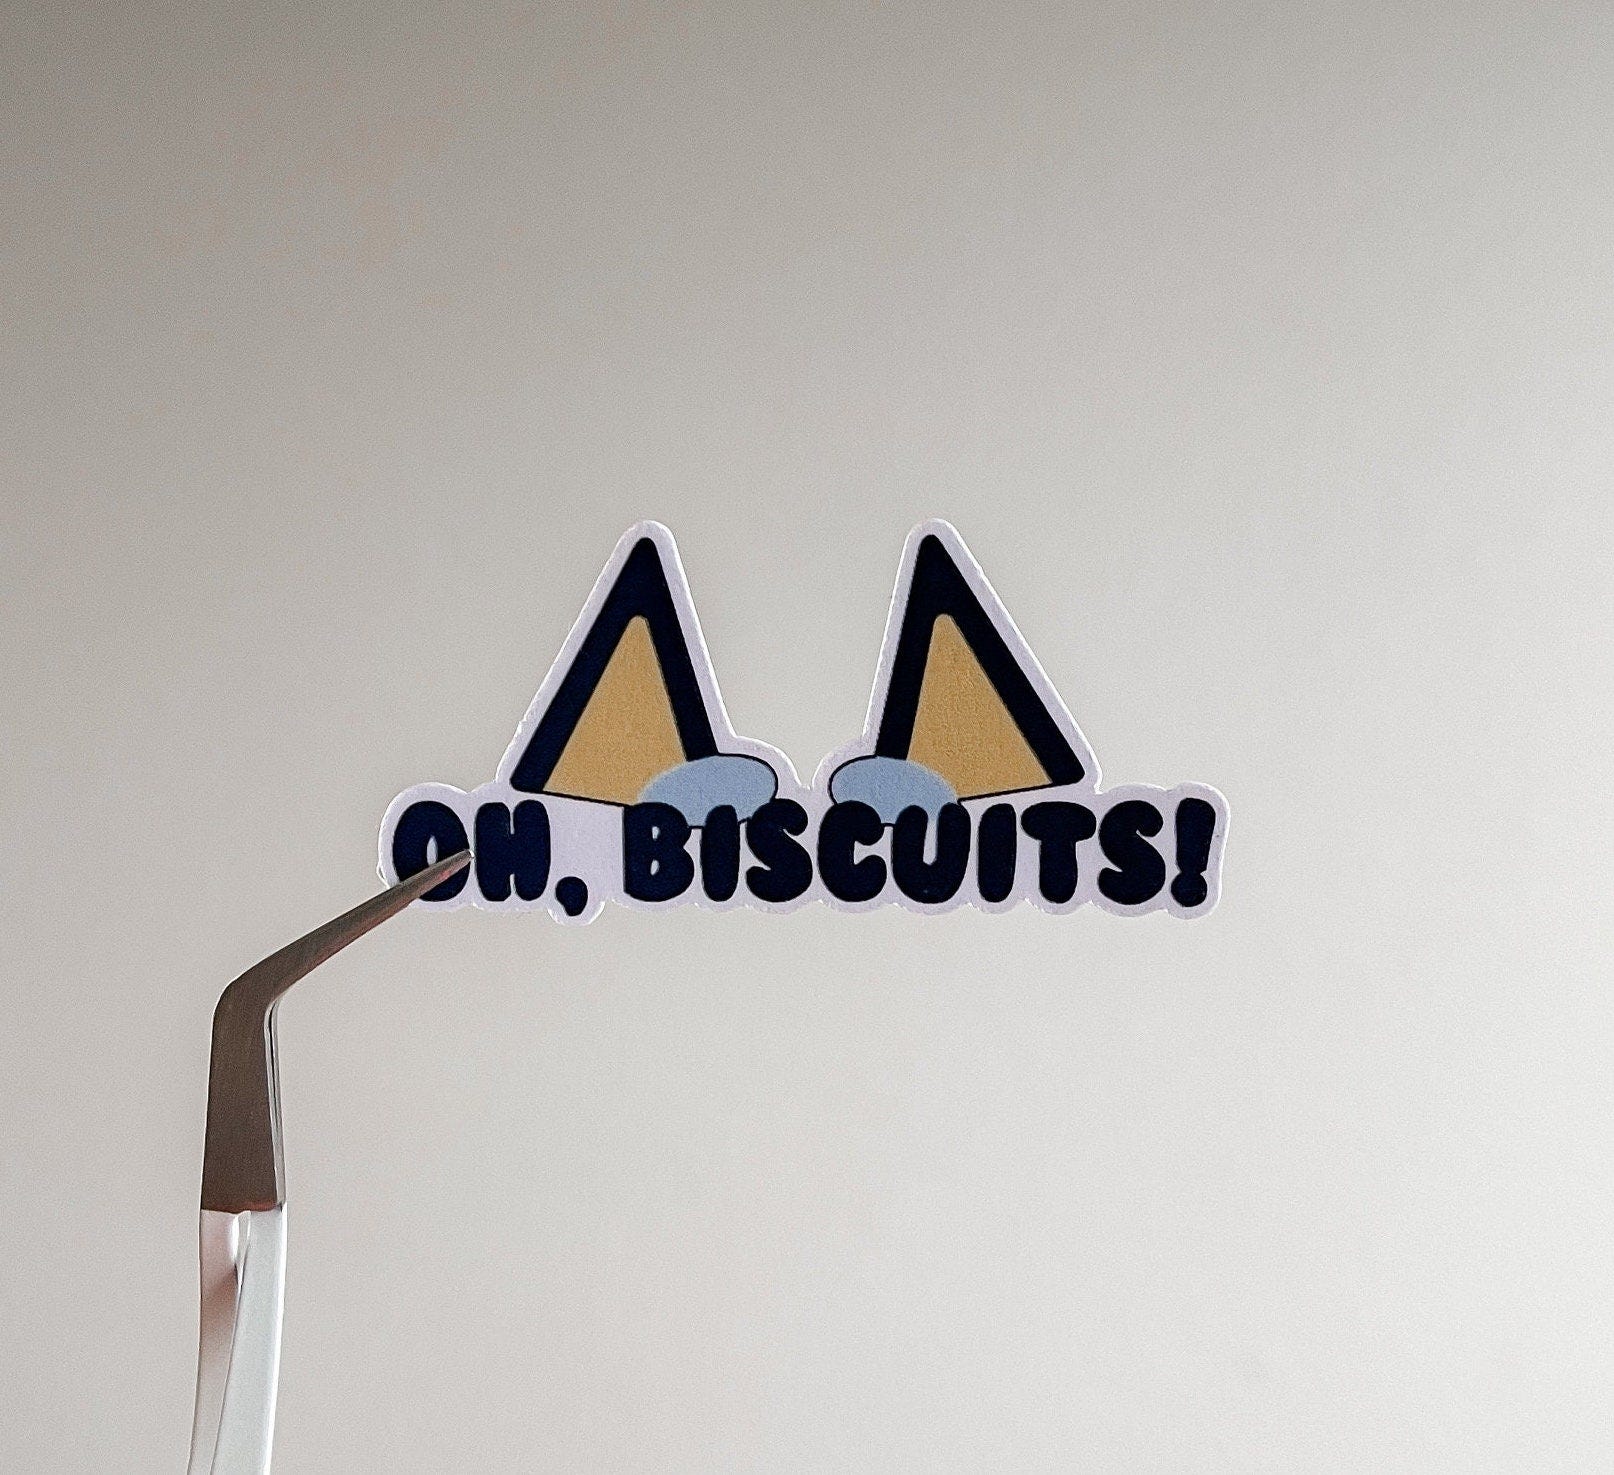 Oh, Biscuits! Sticker